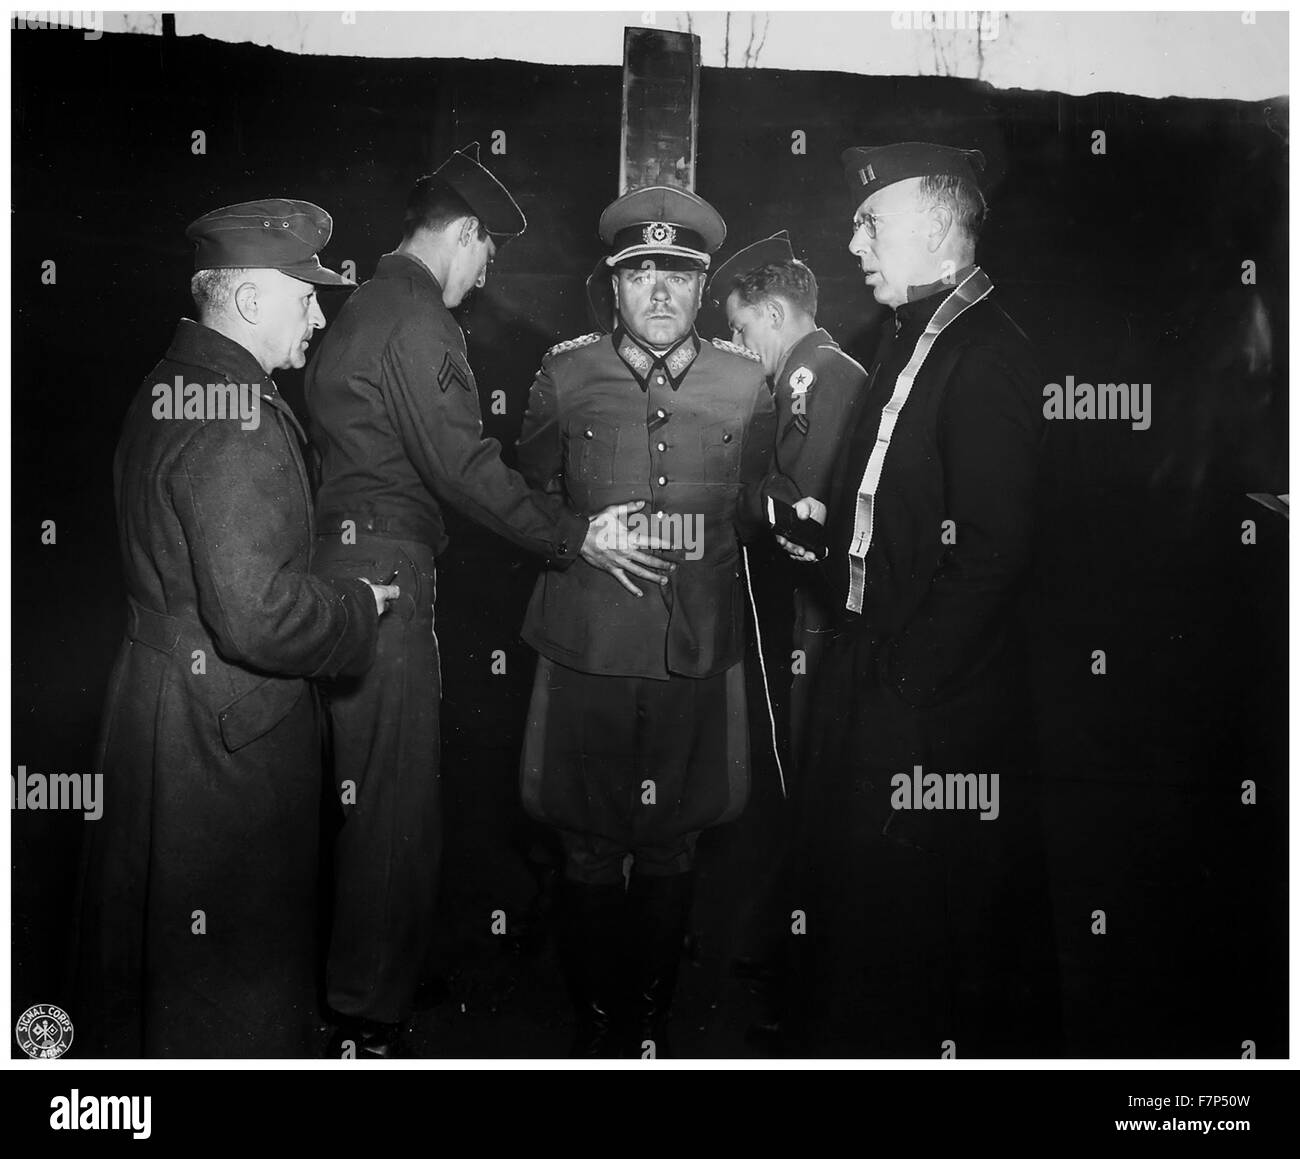 Photographie de l'allemand Anton Dostler (1891-1945) liés à un jeu avant son exécution par un peloton d'exécution, de l'Italie. Datée 1945 Banque D'Images